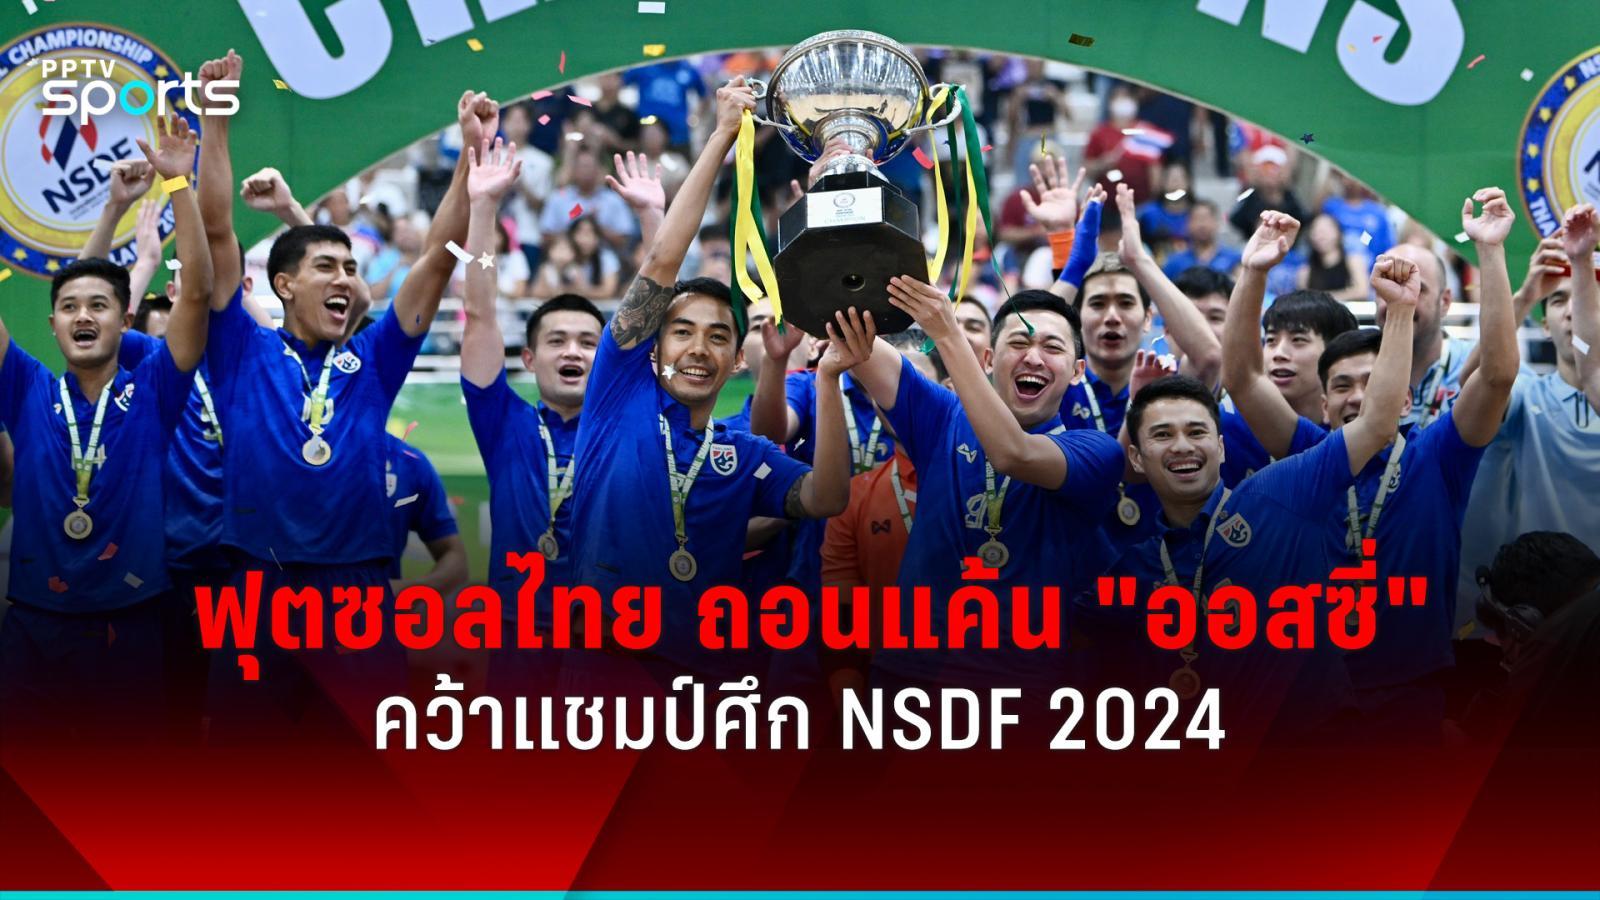 ฟุตซอลไทย ถอนแค้น ออสเตรเลีย 9-2 คว้าแชมป์ nsdf 2024